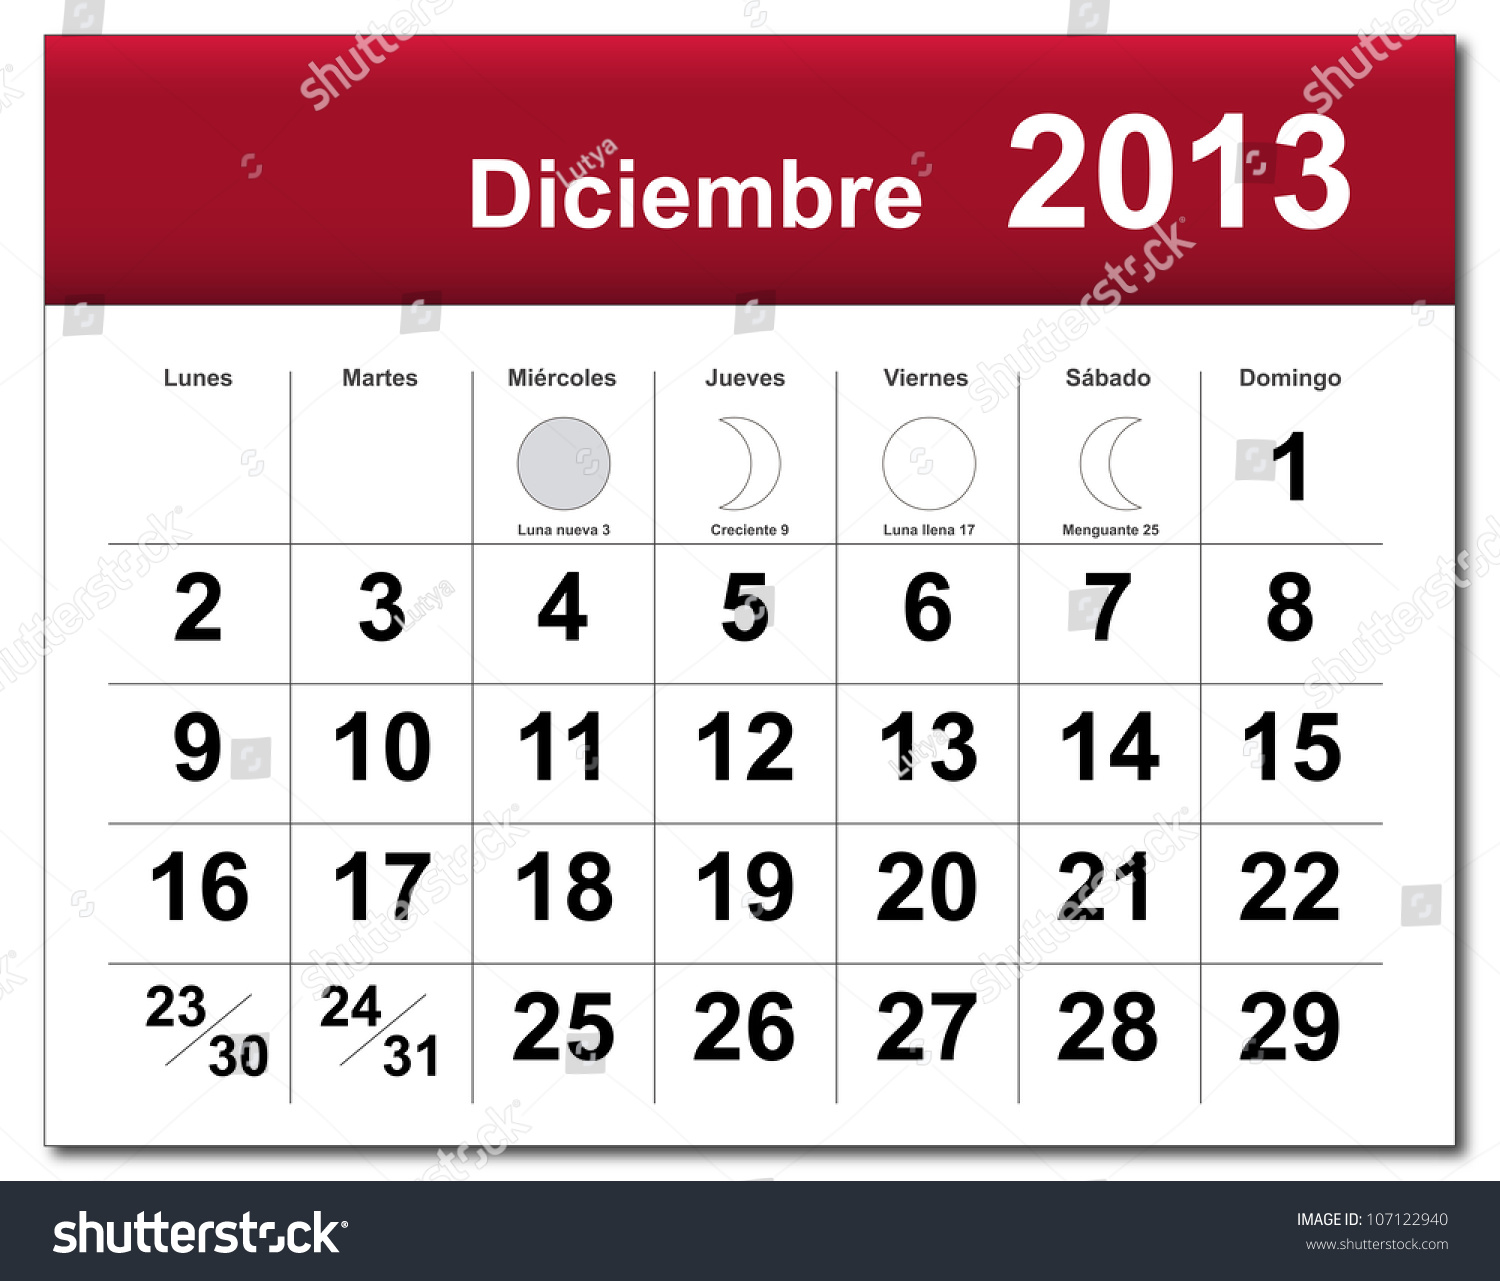 Spanish Version Of December 2013 Calendar. Calendario De Diciembre De ...